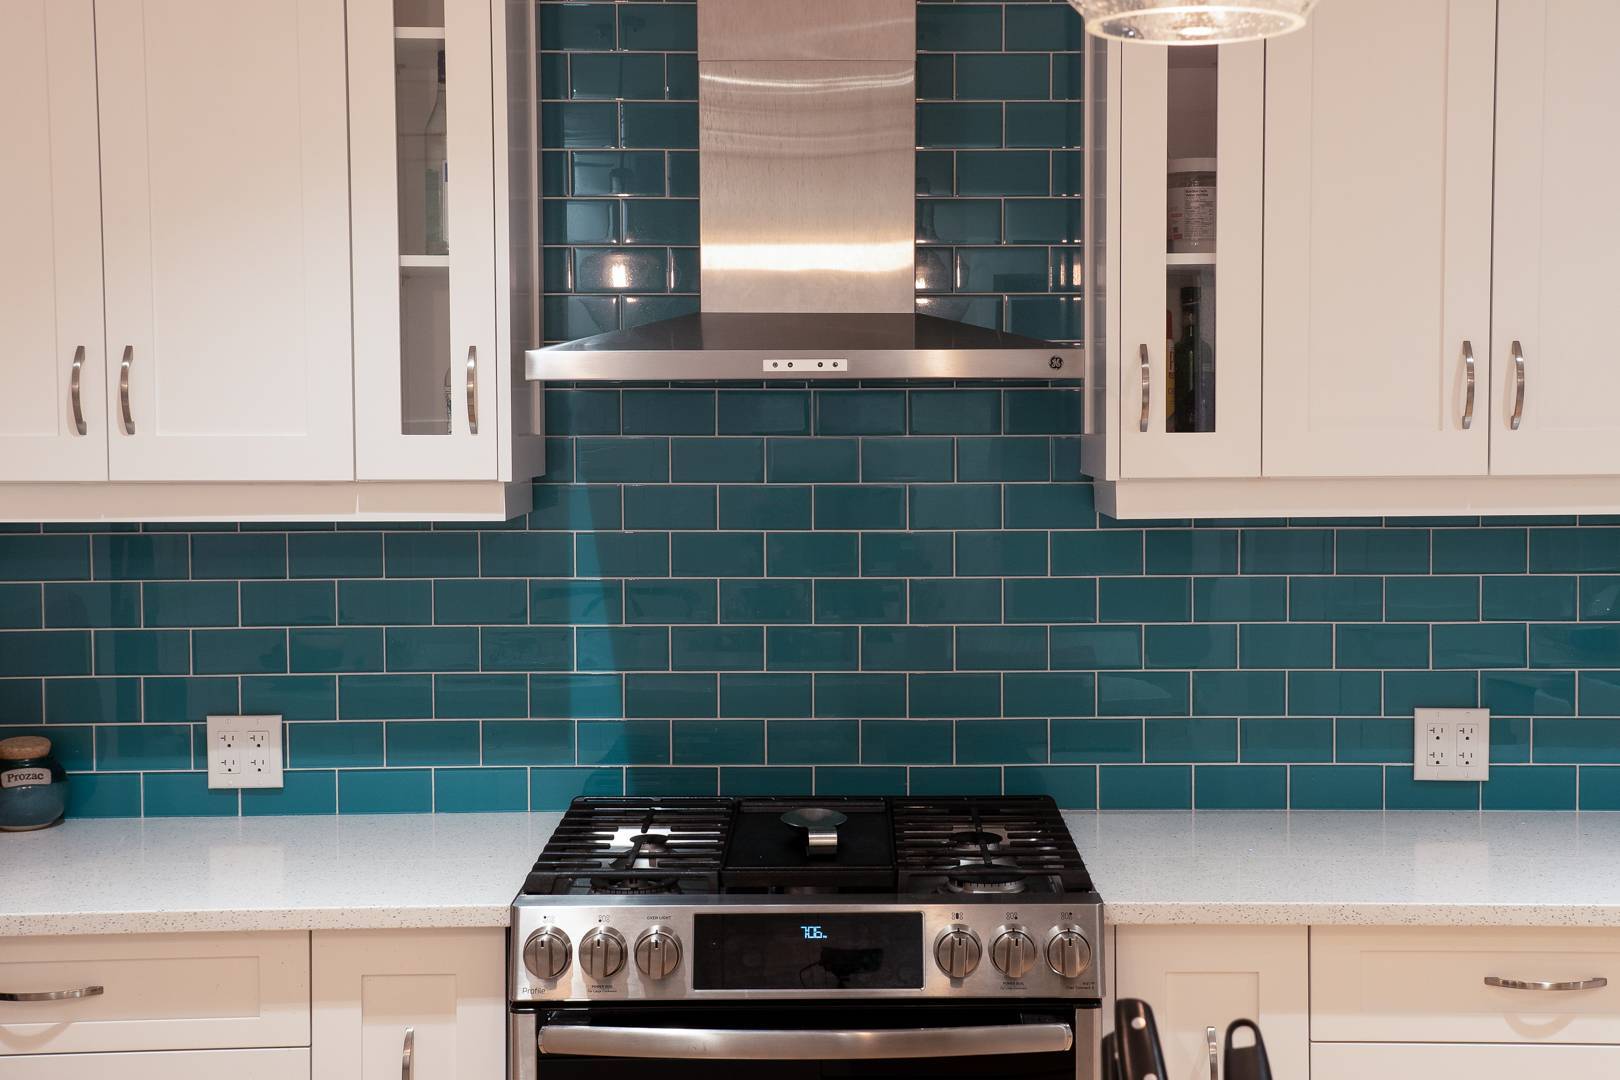 Modern kitchen with gas range and teal blue tile backsplash